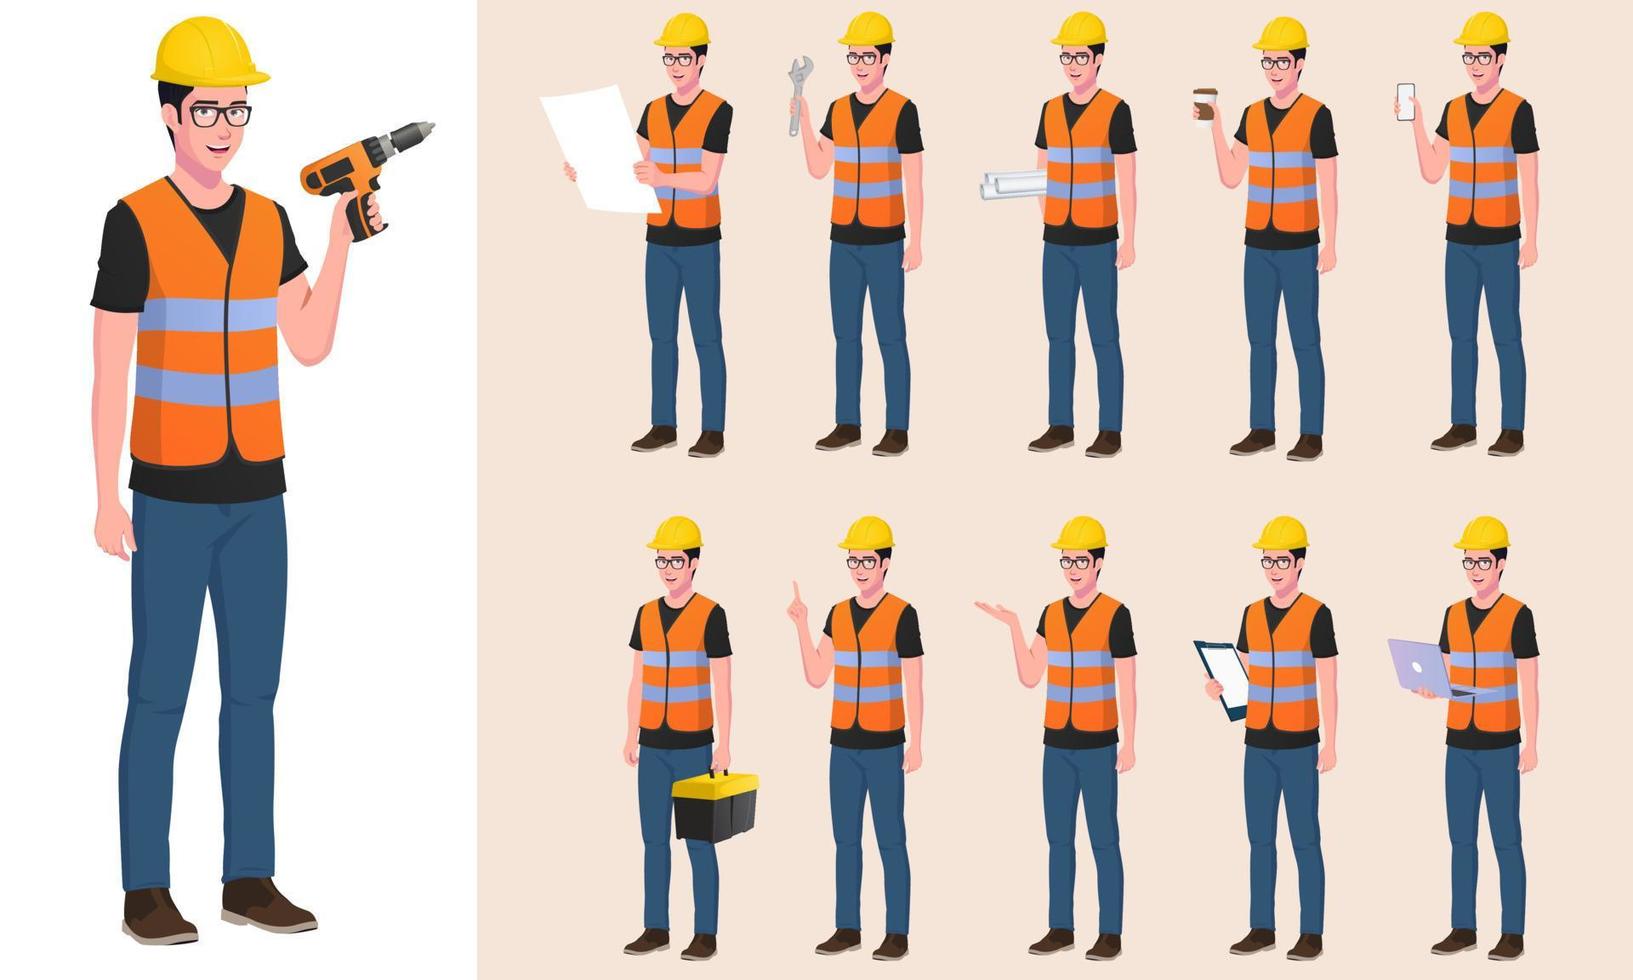 byggnadsarbetare, ingenjör karaktärsuppsättning med olika poser, gester och handlingar vektor